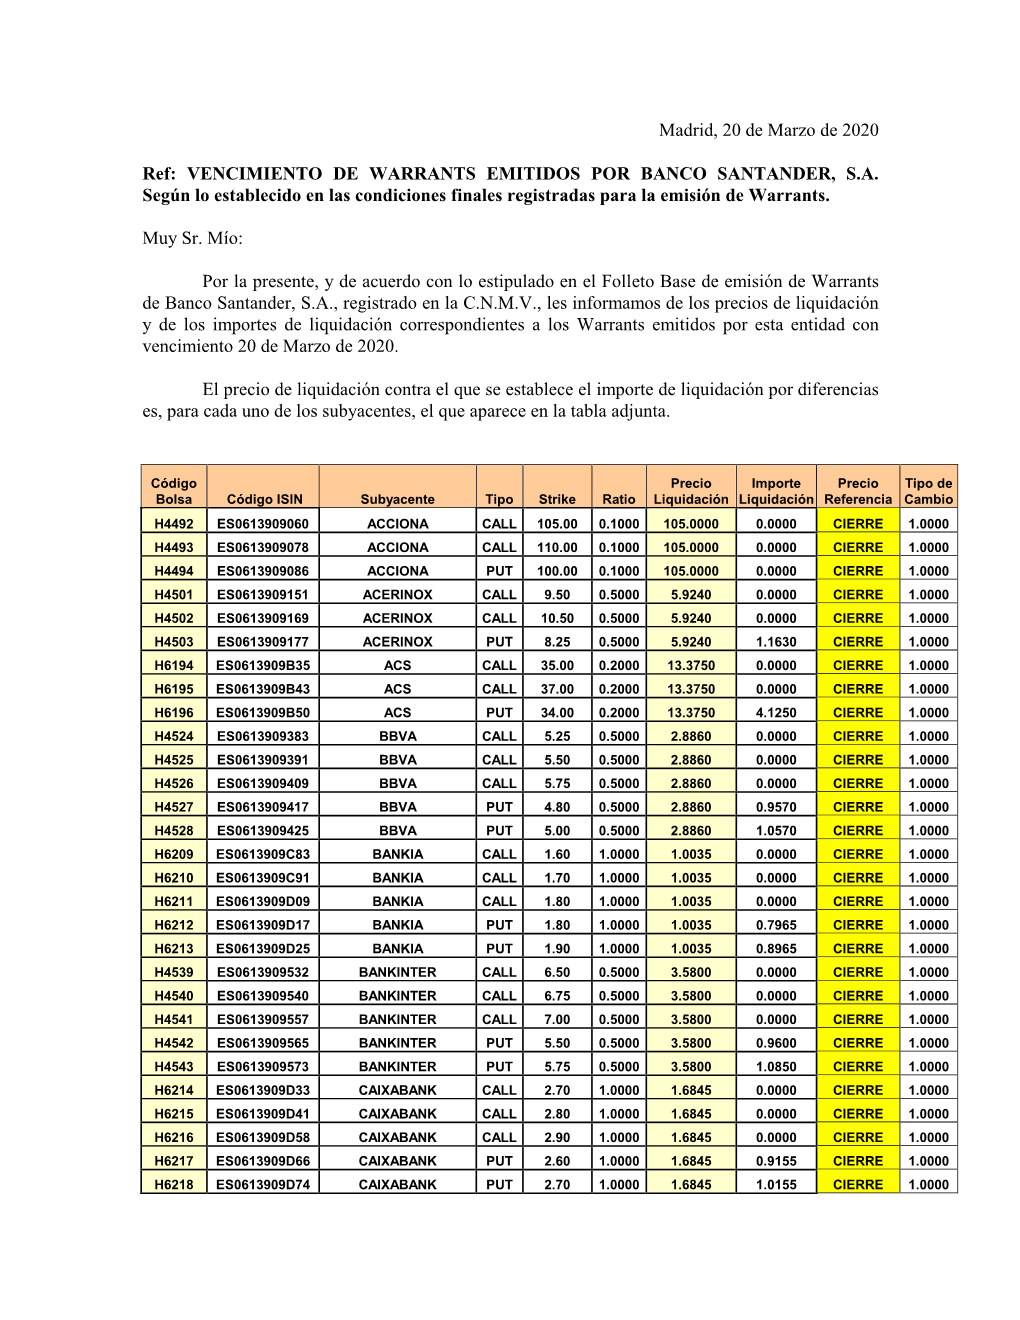 Información Complementaria Warrants Emitidos Por Banco Santander